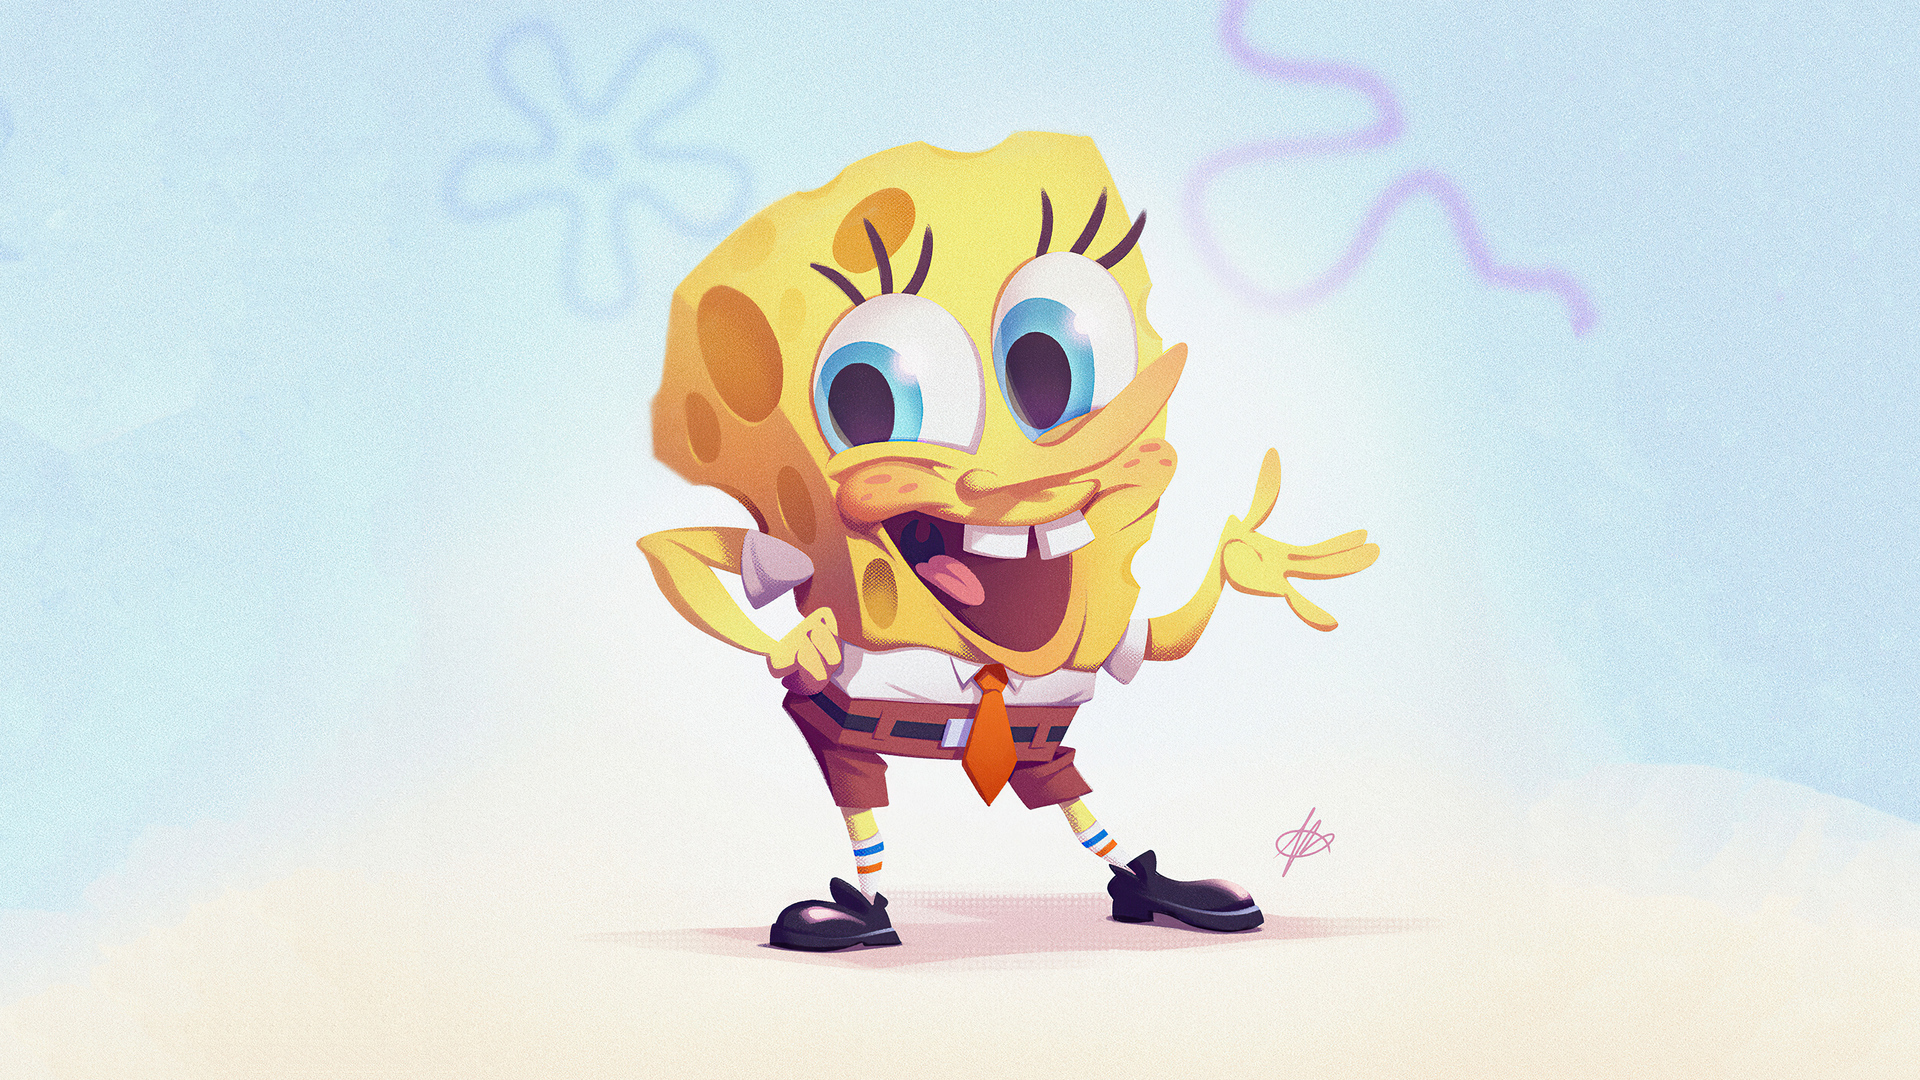 spongebob-art-4k-wk.jpg